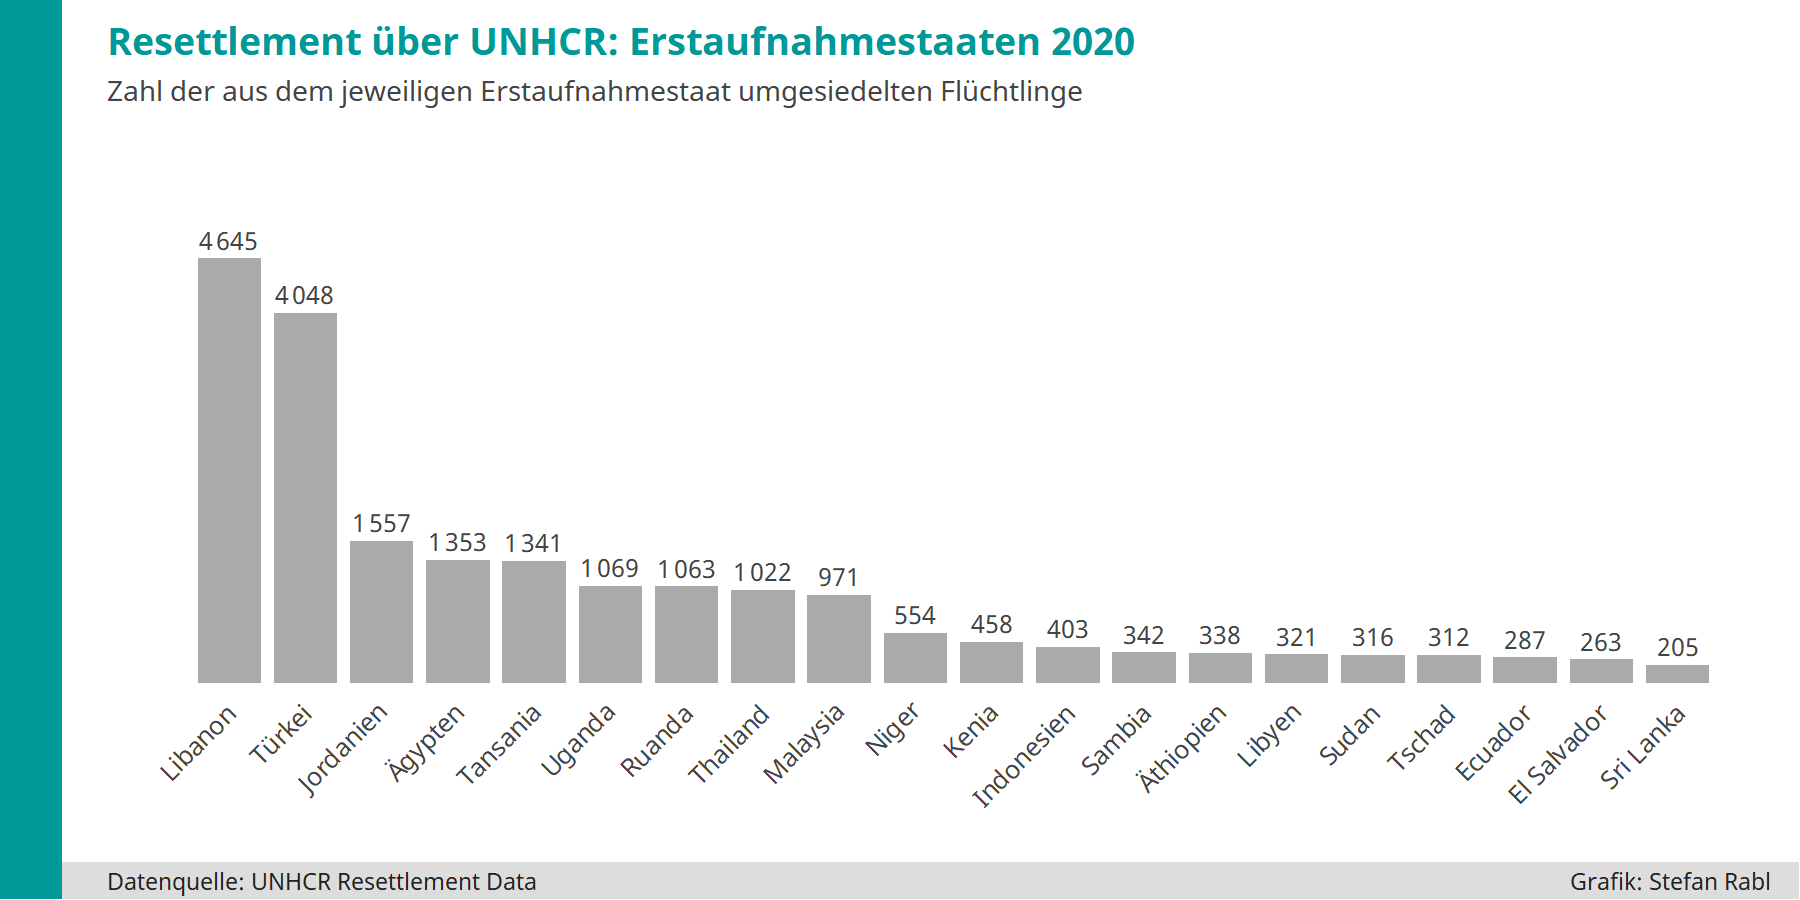 Grafik: Über Resettlement 2020 umgesiedelte Flüchtlinge nach Erstaufnahmestaaten